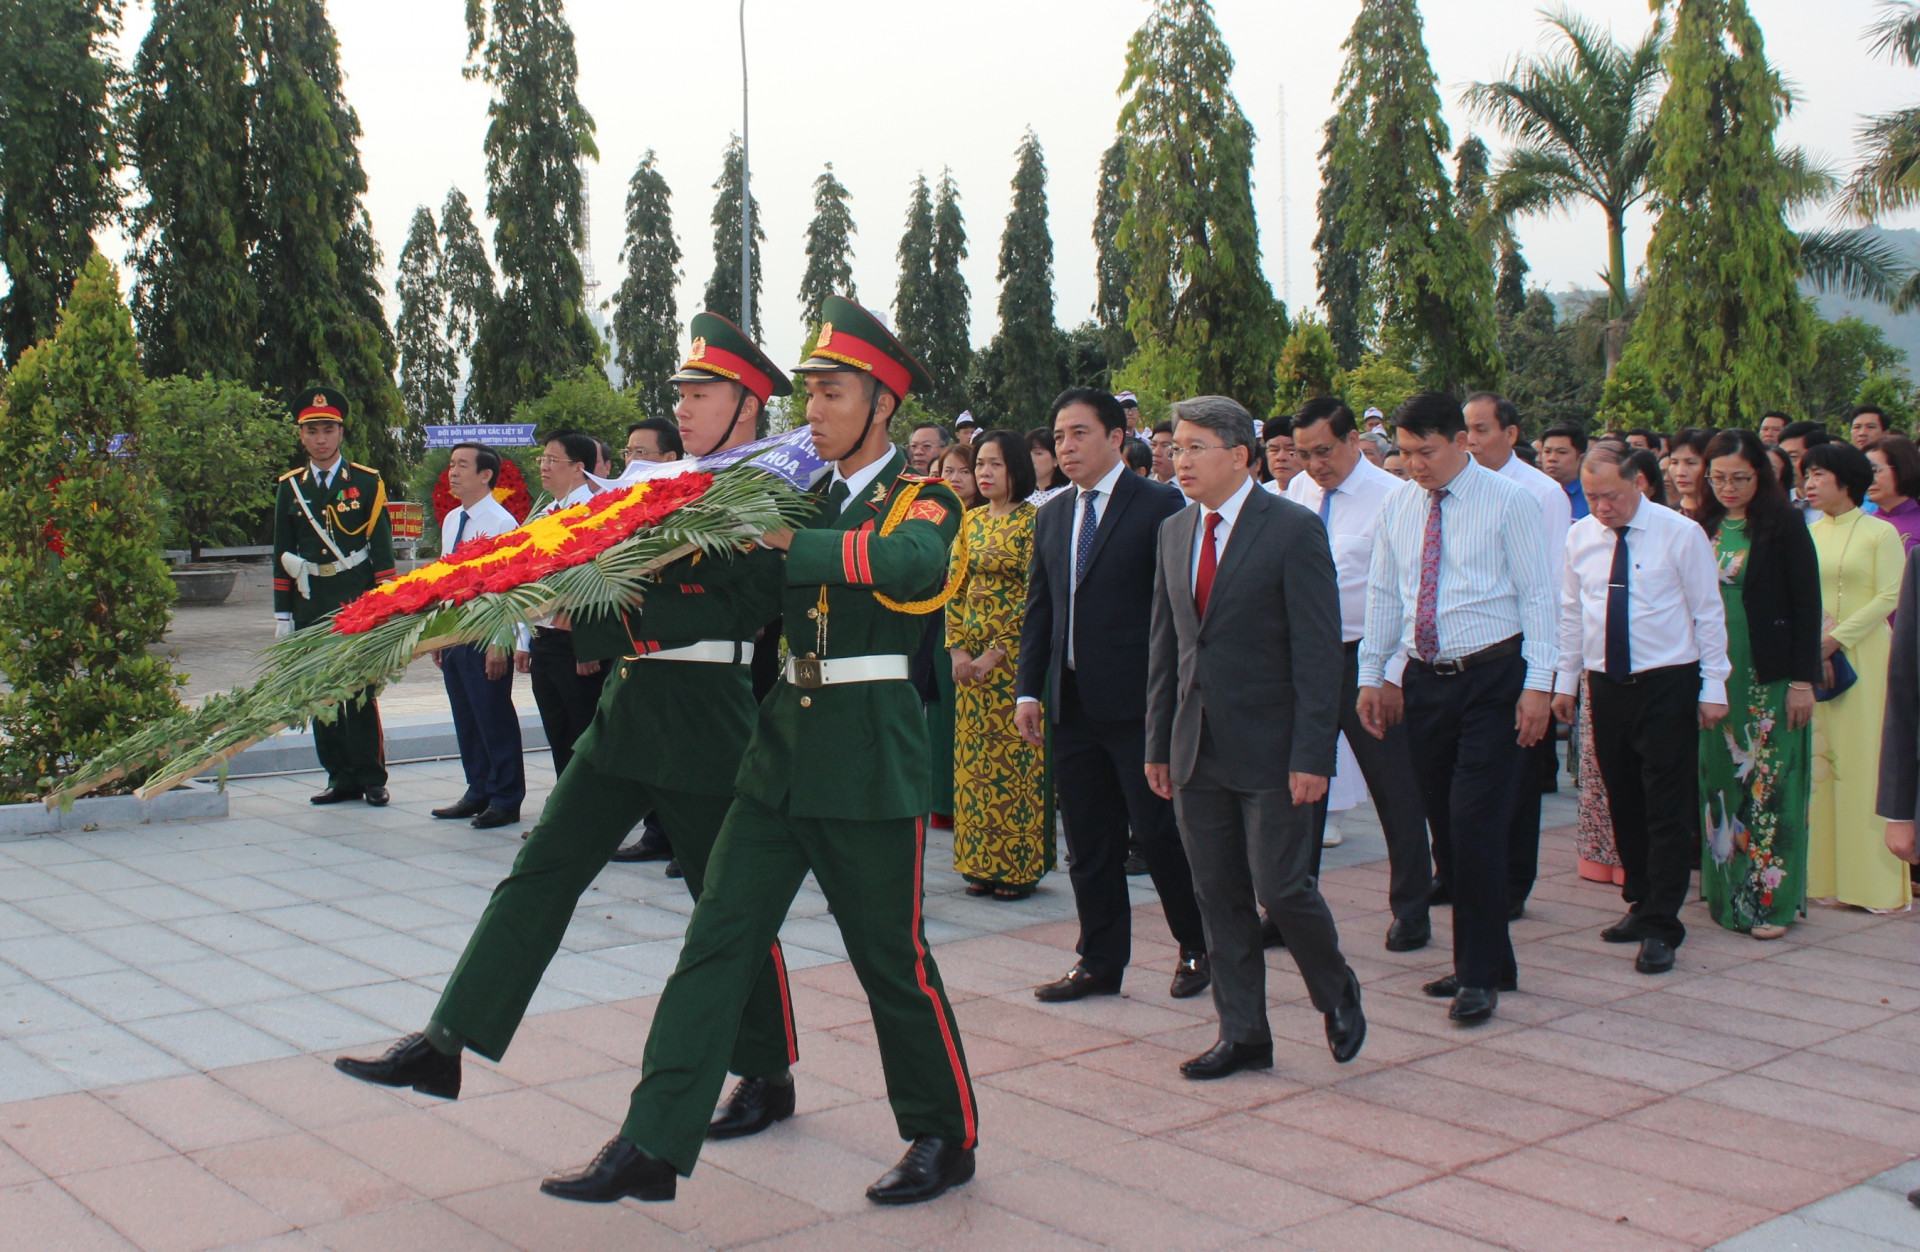 Đoàn đại biểu của Ban Chấp hành Đảng bộ tỉnh do ông Nguyễn Hải Ninh dẫn đầu vào viếng, vòng hoa mang dòng chữ: Đảng, Nhà nước, Nhân dân ghi nhớ công ơn các liệt sĩ.